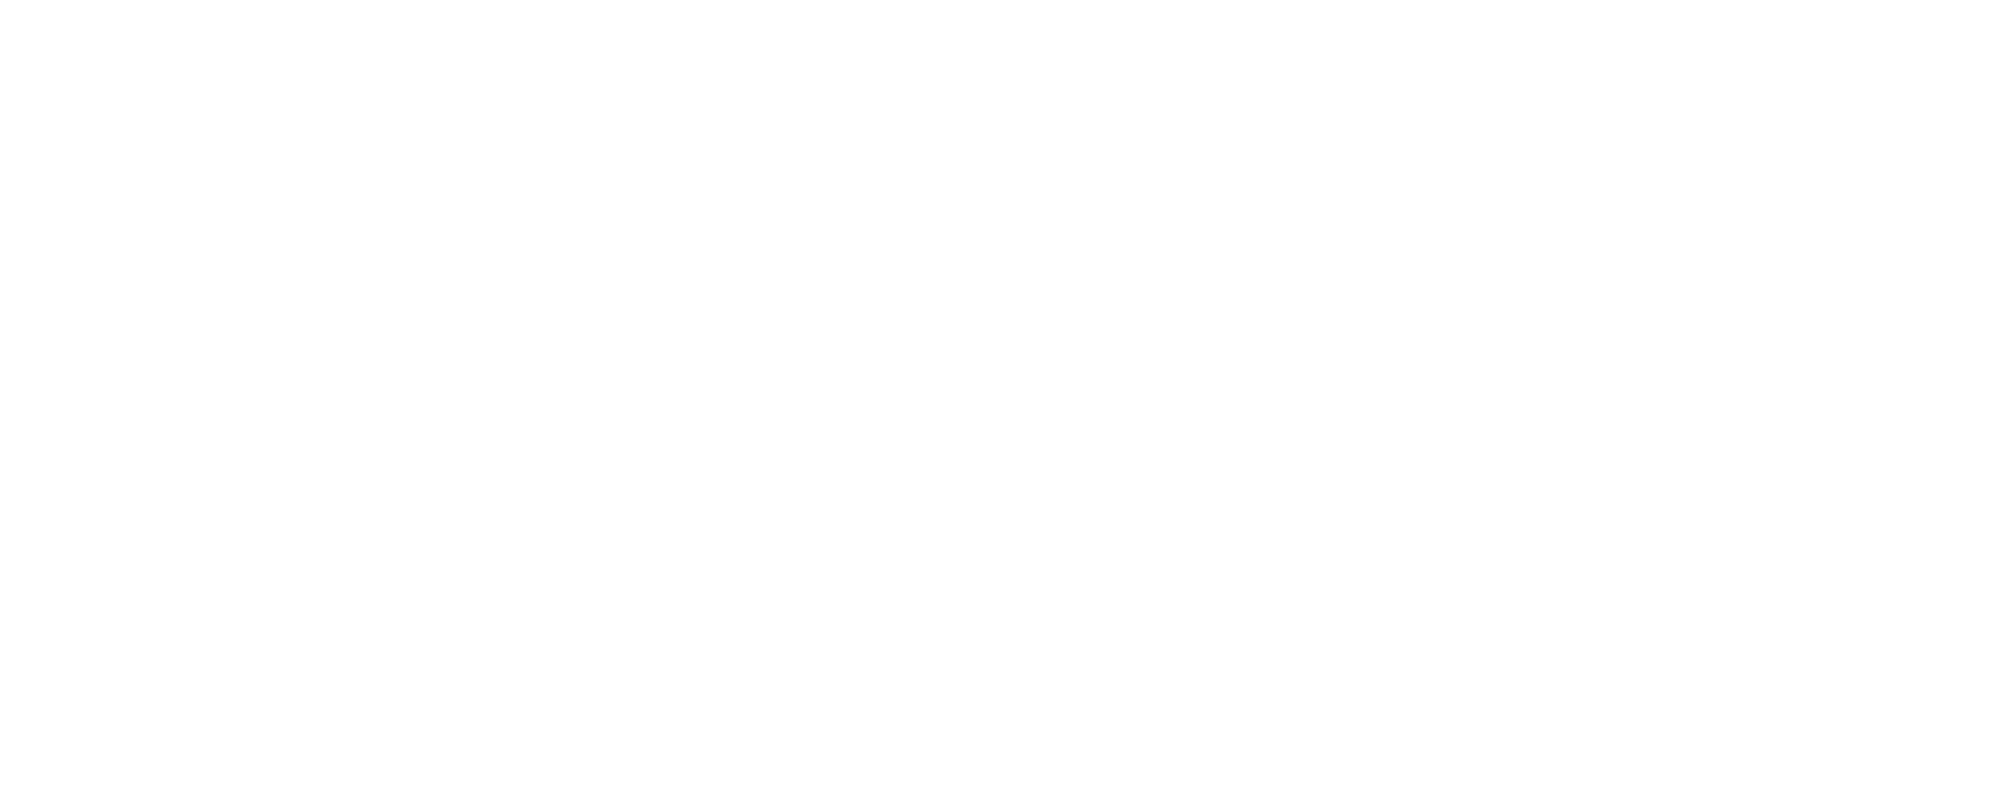 RE/MAX La Costa Realtors